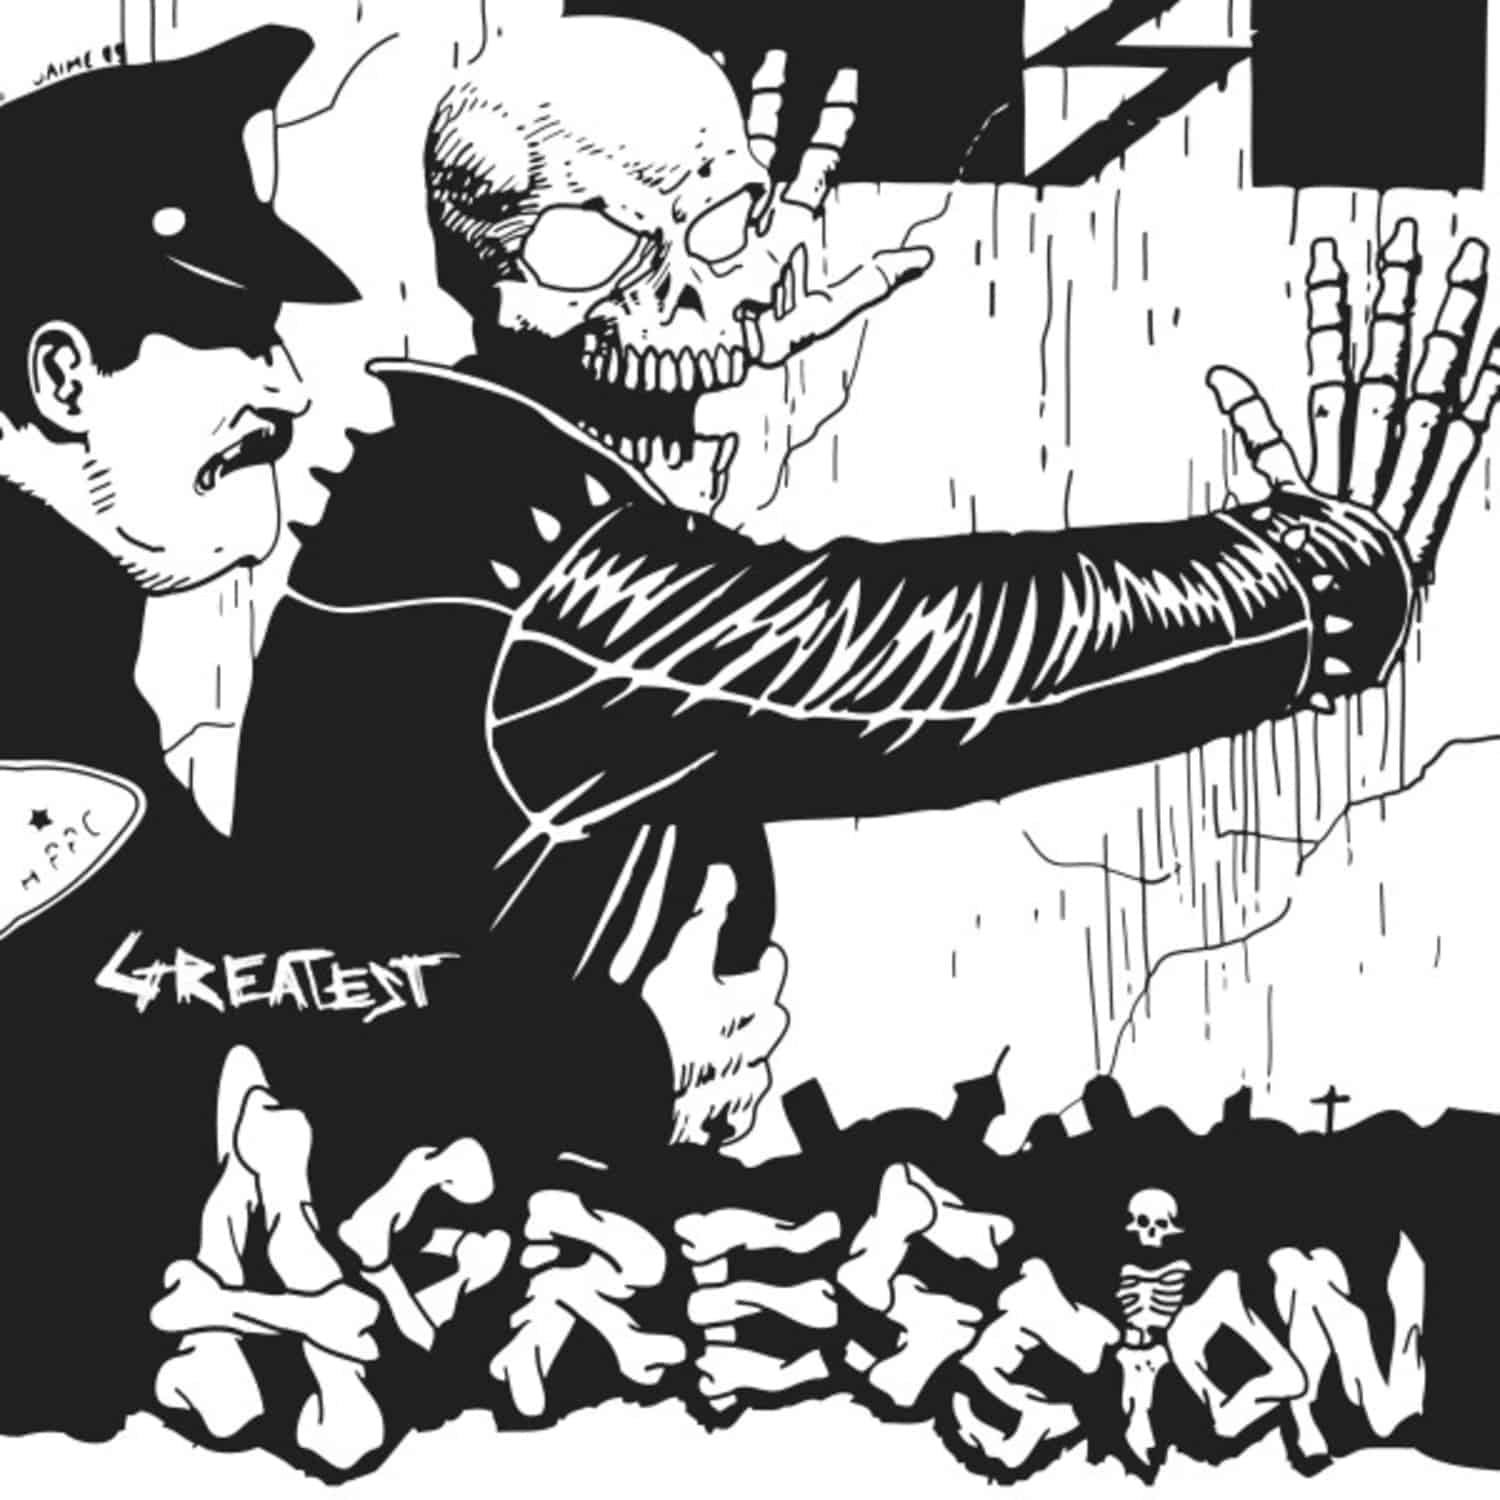 Agression - GREATEST BLACK / WHITE SPLATTER 